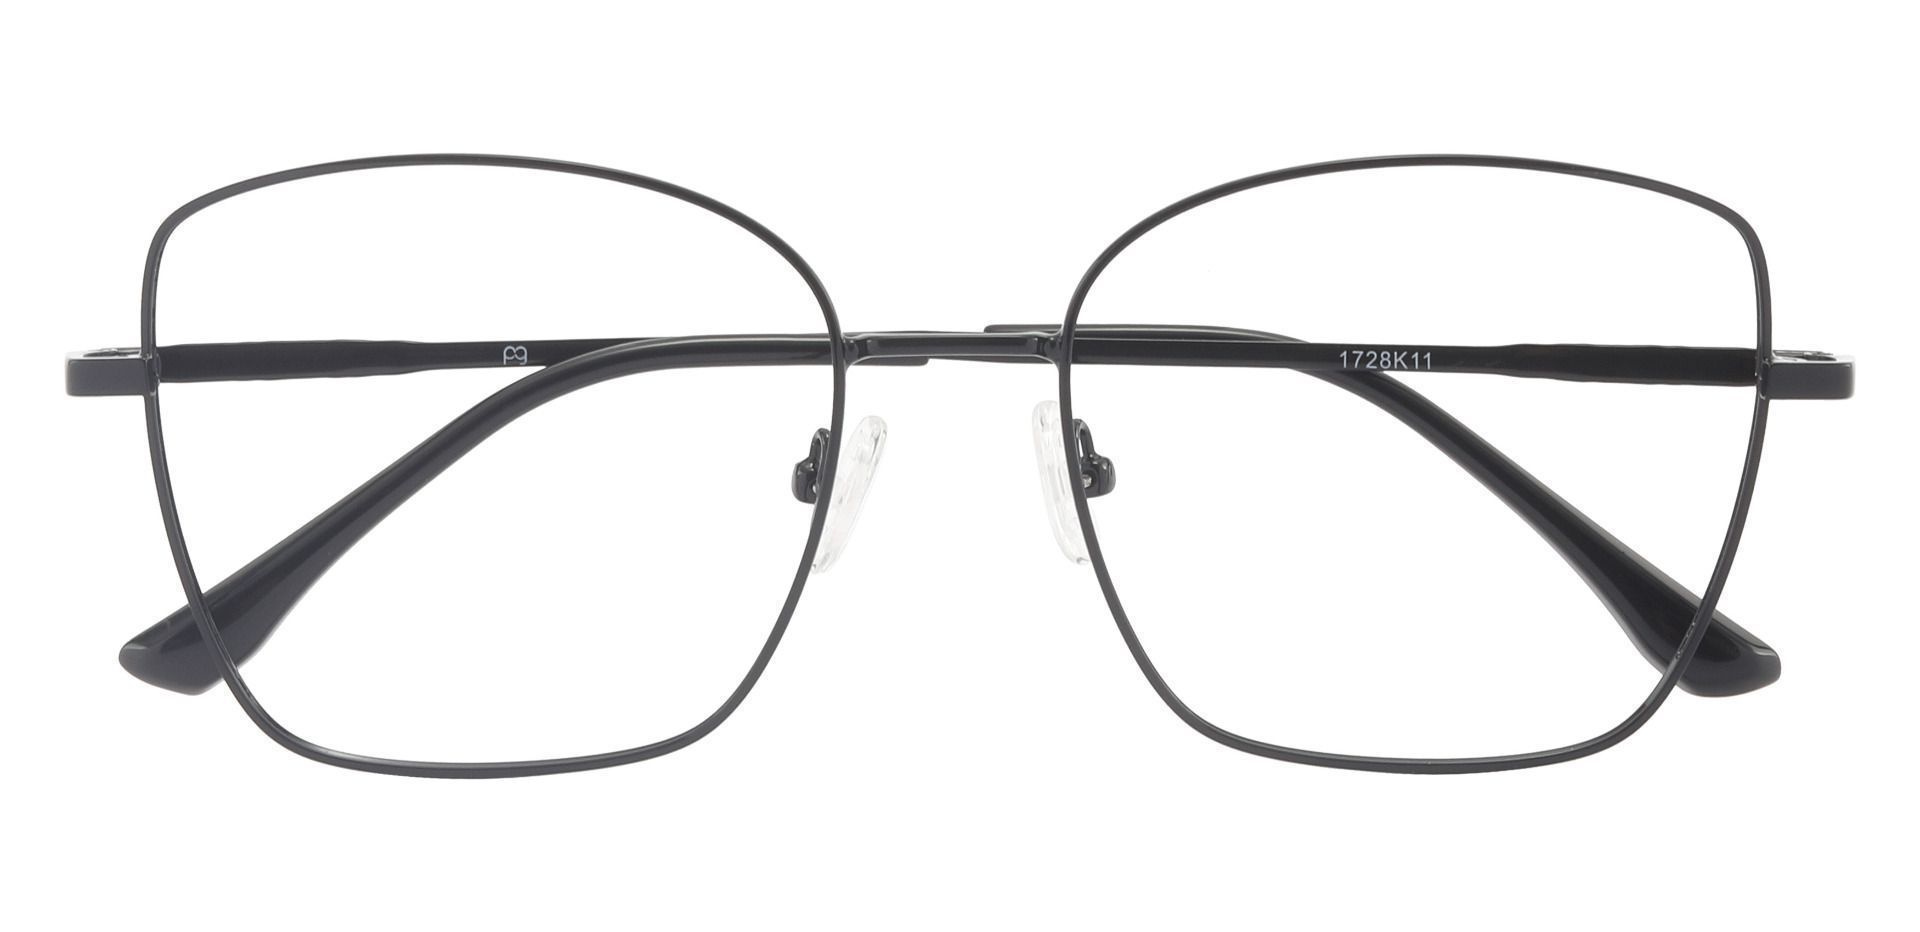 Augusta Square Prescription Glasses Black Men S Eyeglasses Payne Glasses